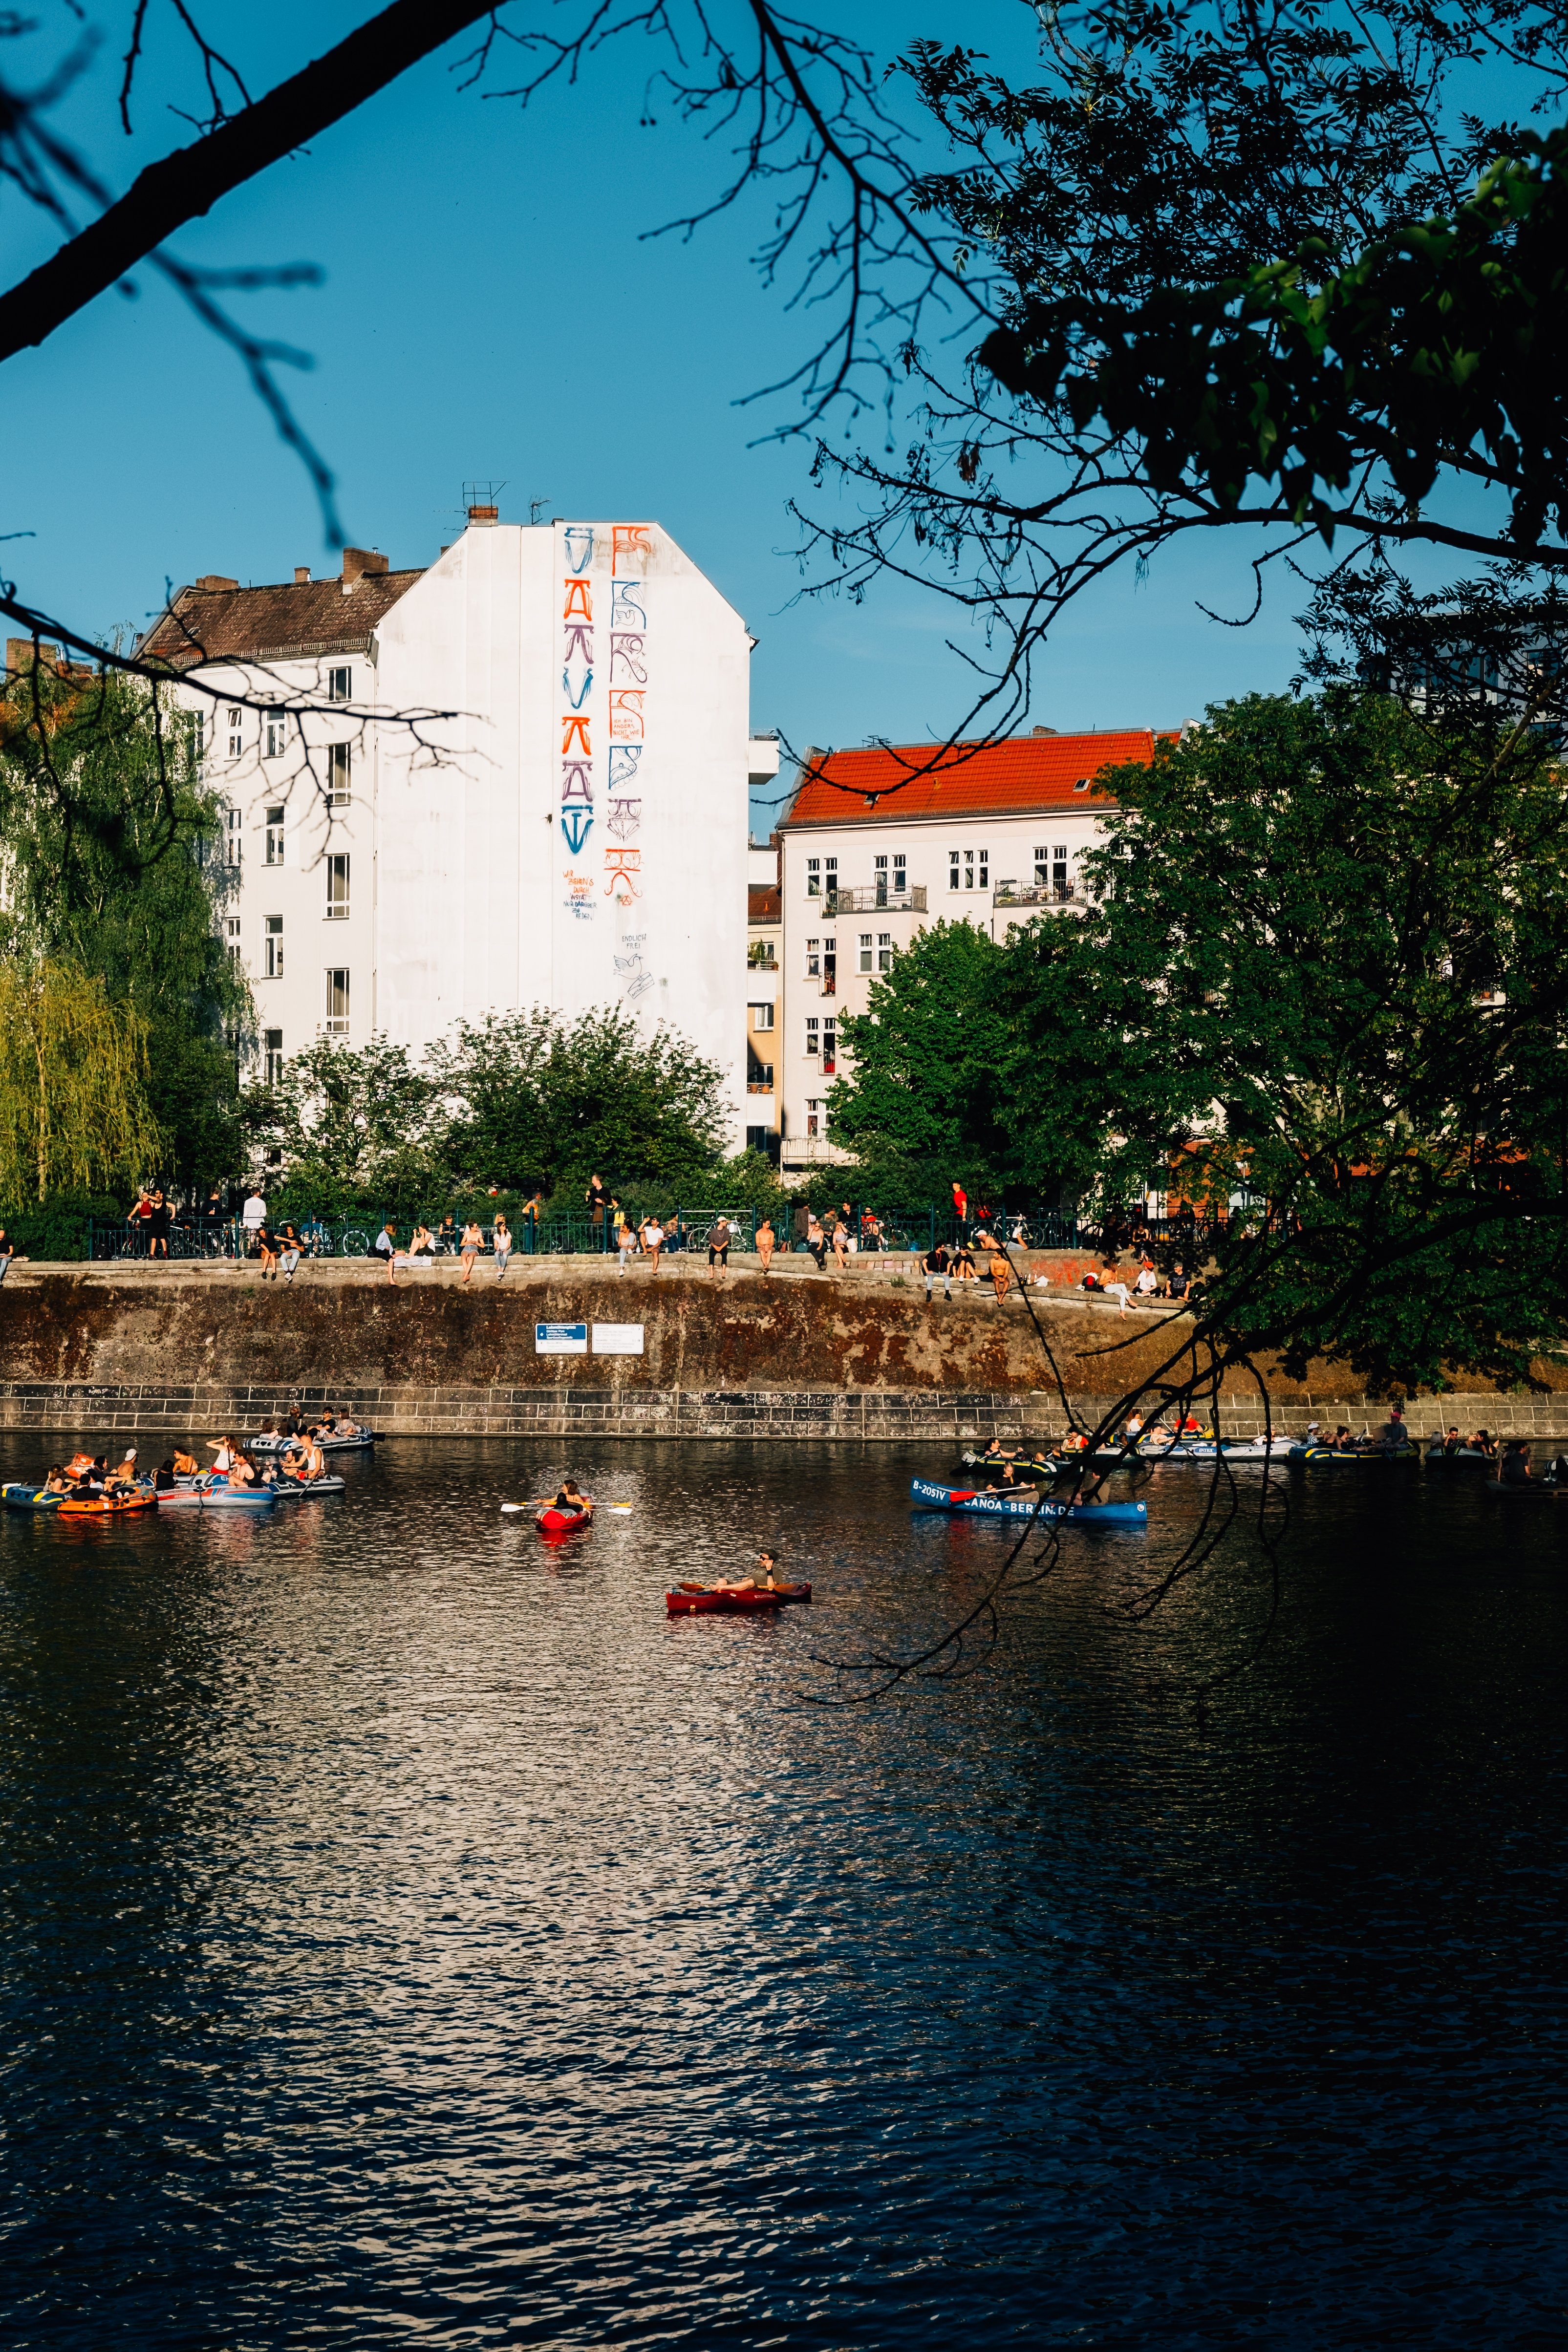 Des kayaks flottent dans la rivière avec des bâtiments derrière Photo 